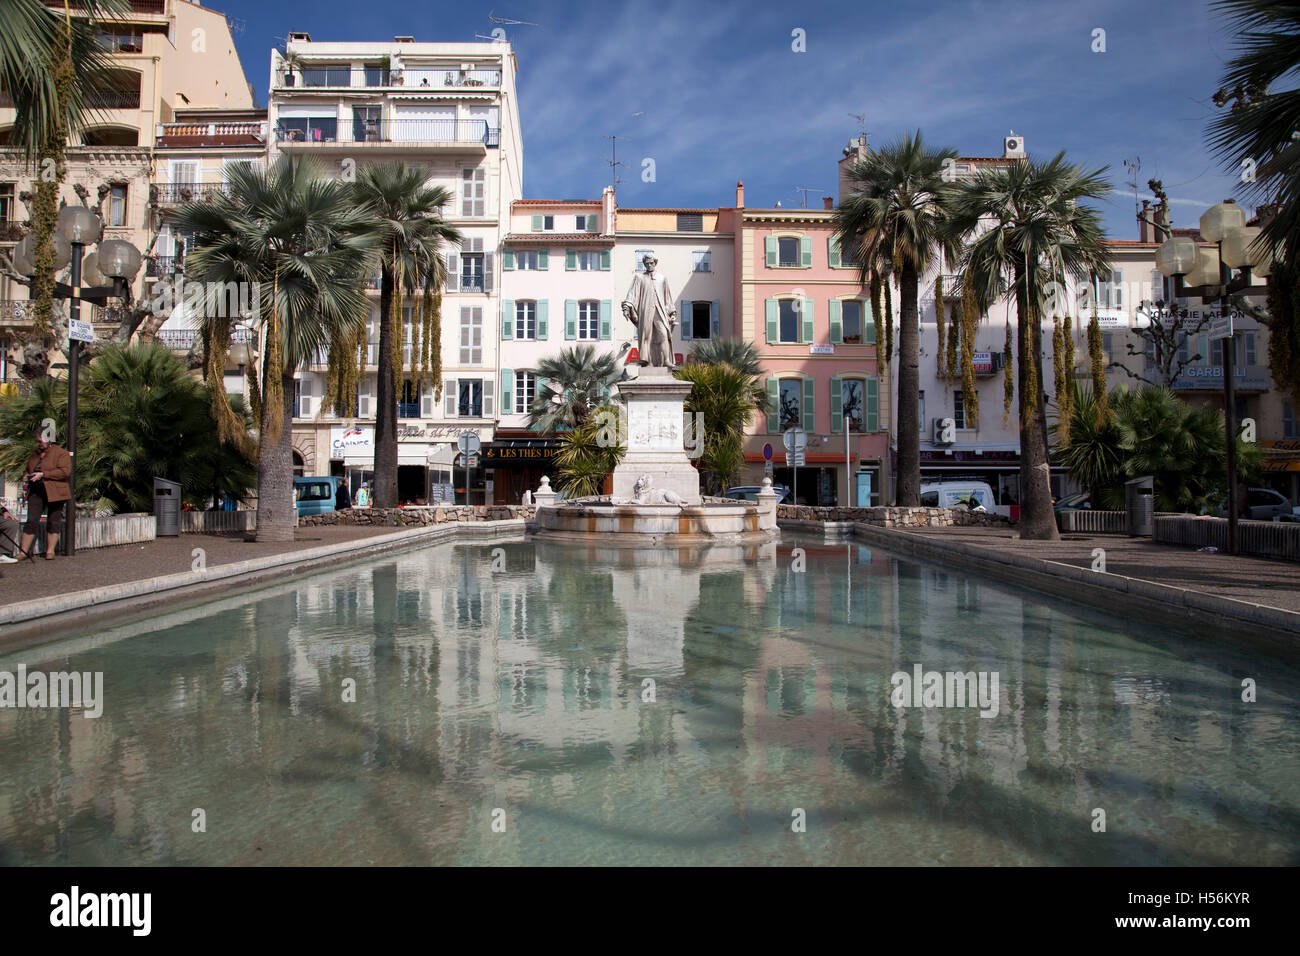 Statue de Lord Brougham dans la vieille ville de Cannes, Côte d'Azur, France, Europe Banque D'Images